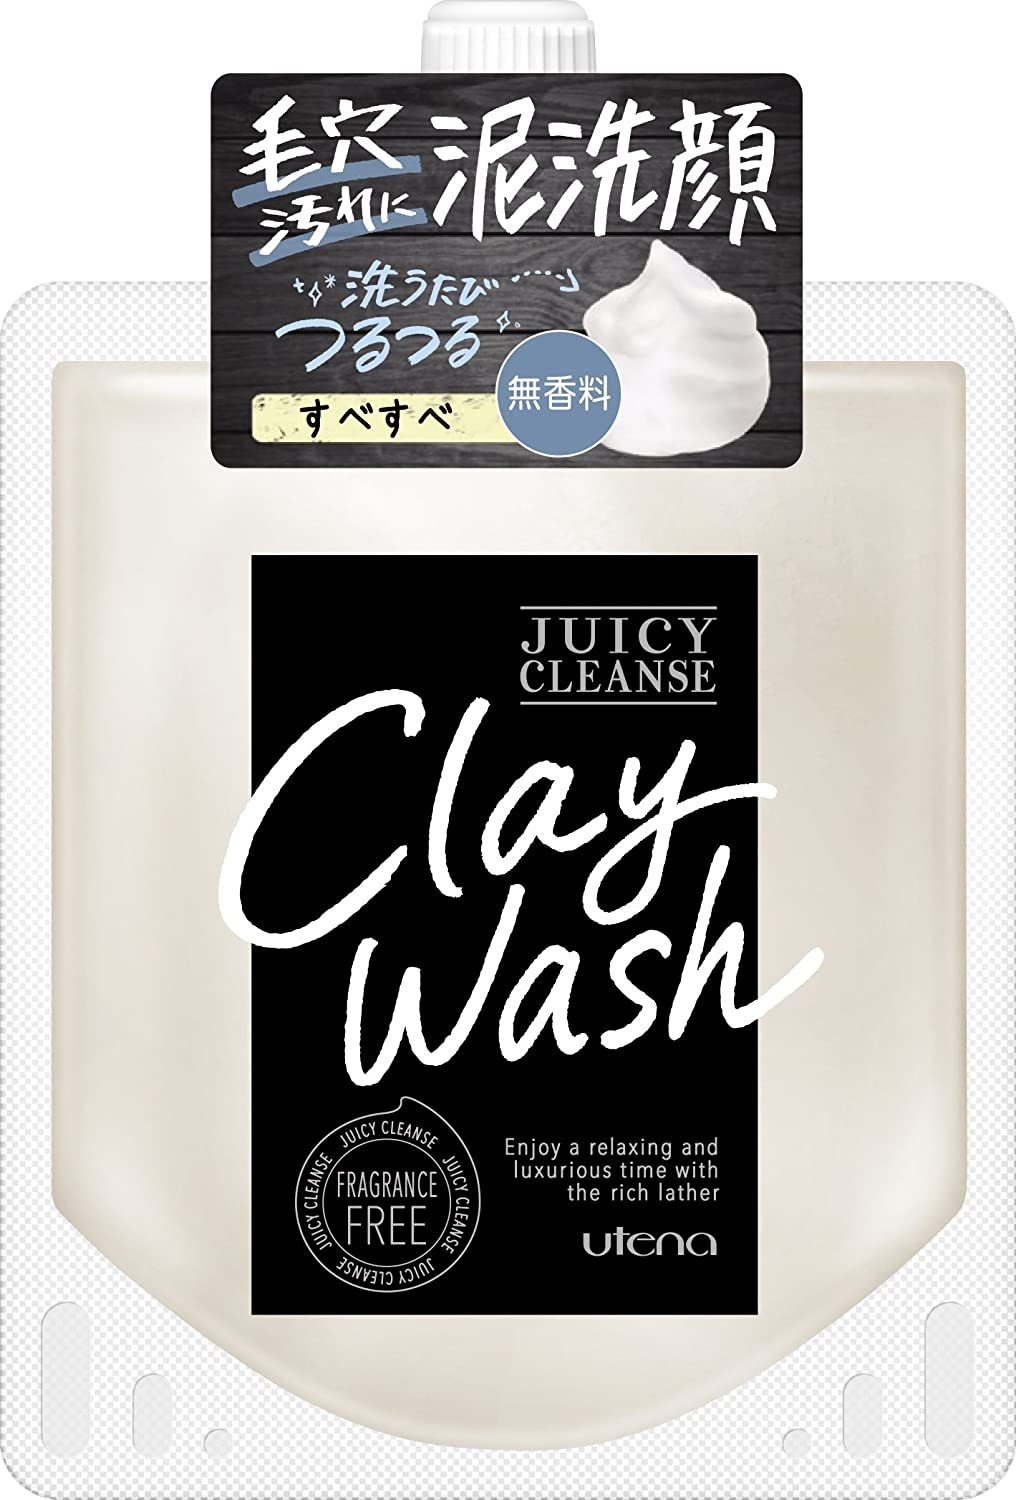 Смягчающая глина для умывания с медом Utena Juicy Cleanse Clay Wash Fragrance Free, 110 гр